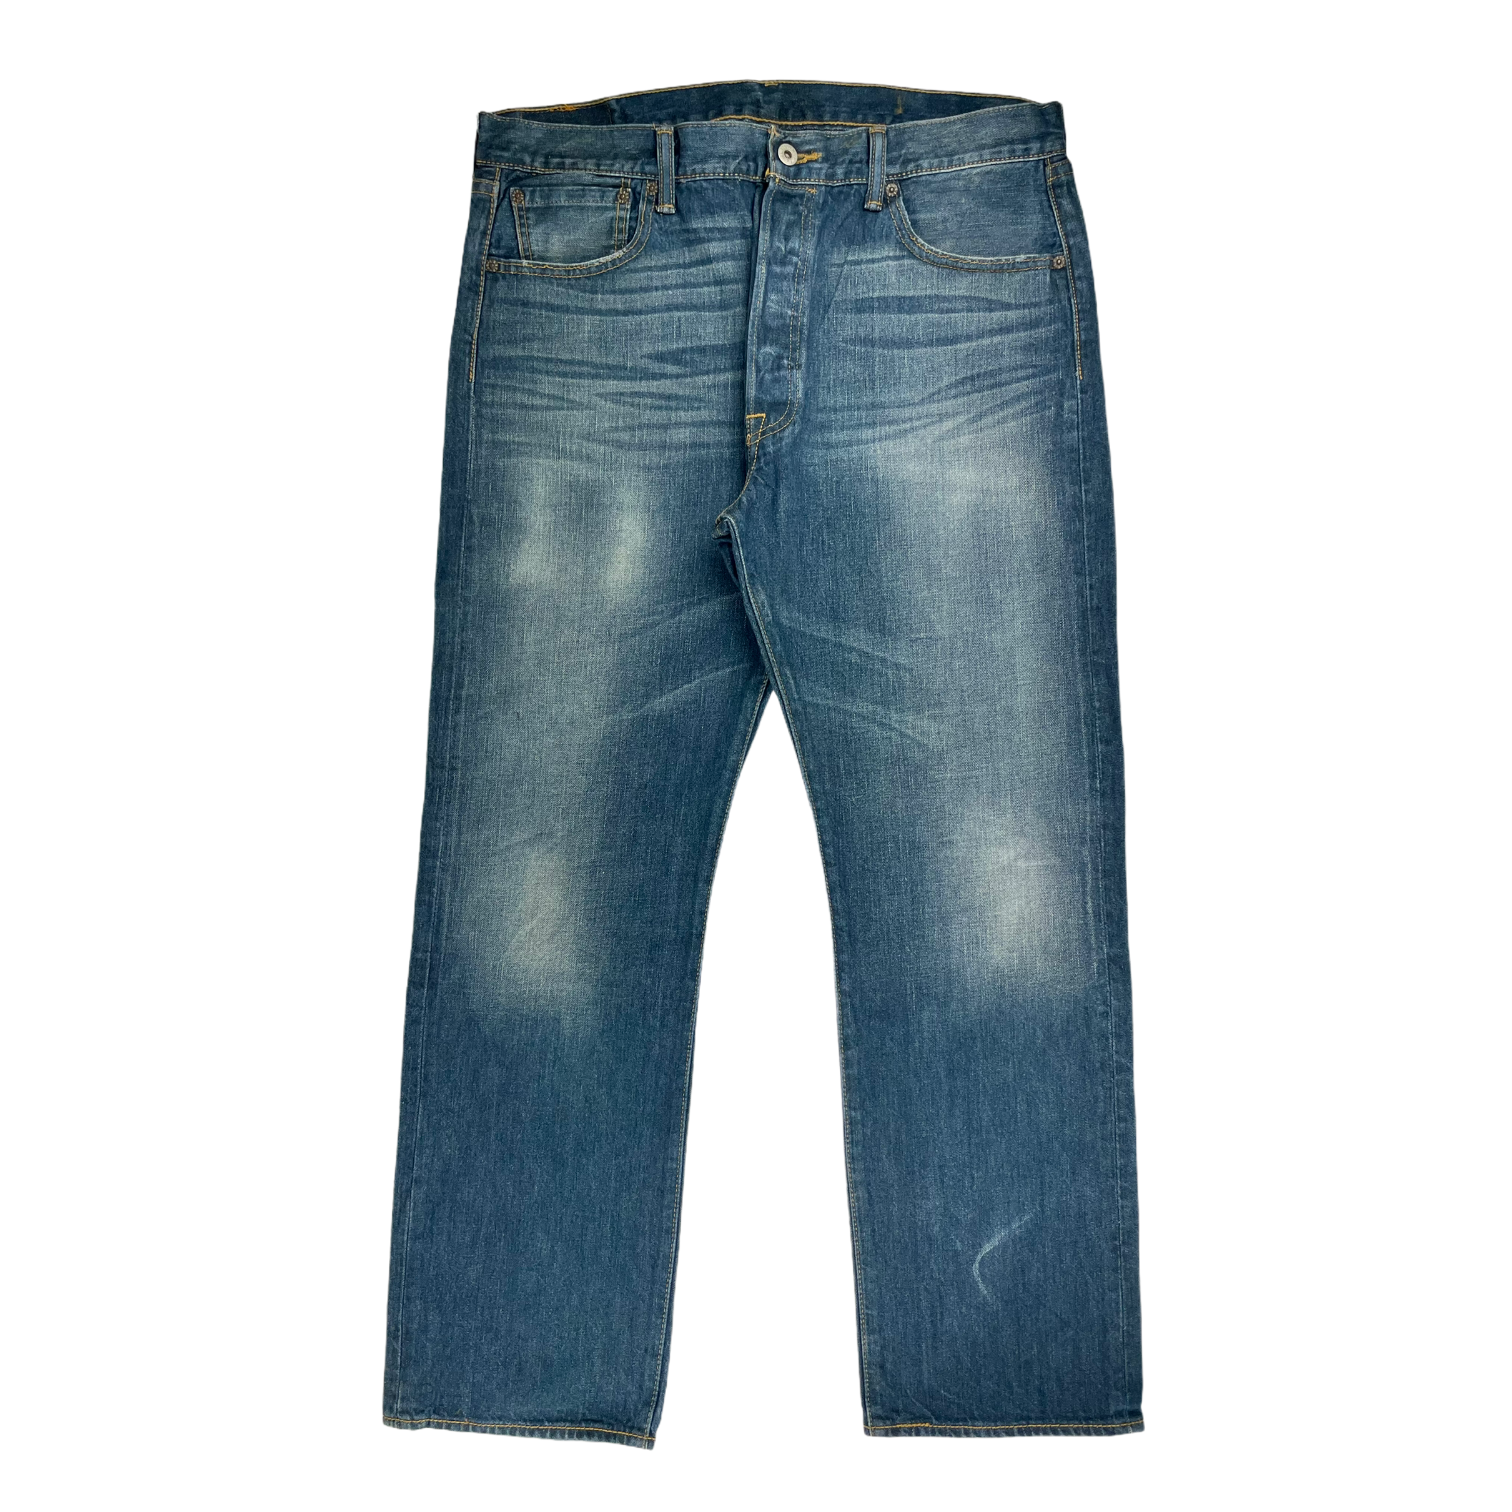 Vintage Levi's jeans 501 - 36/30 | Restorecph